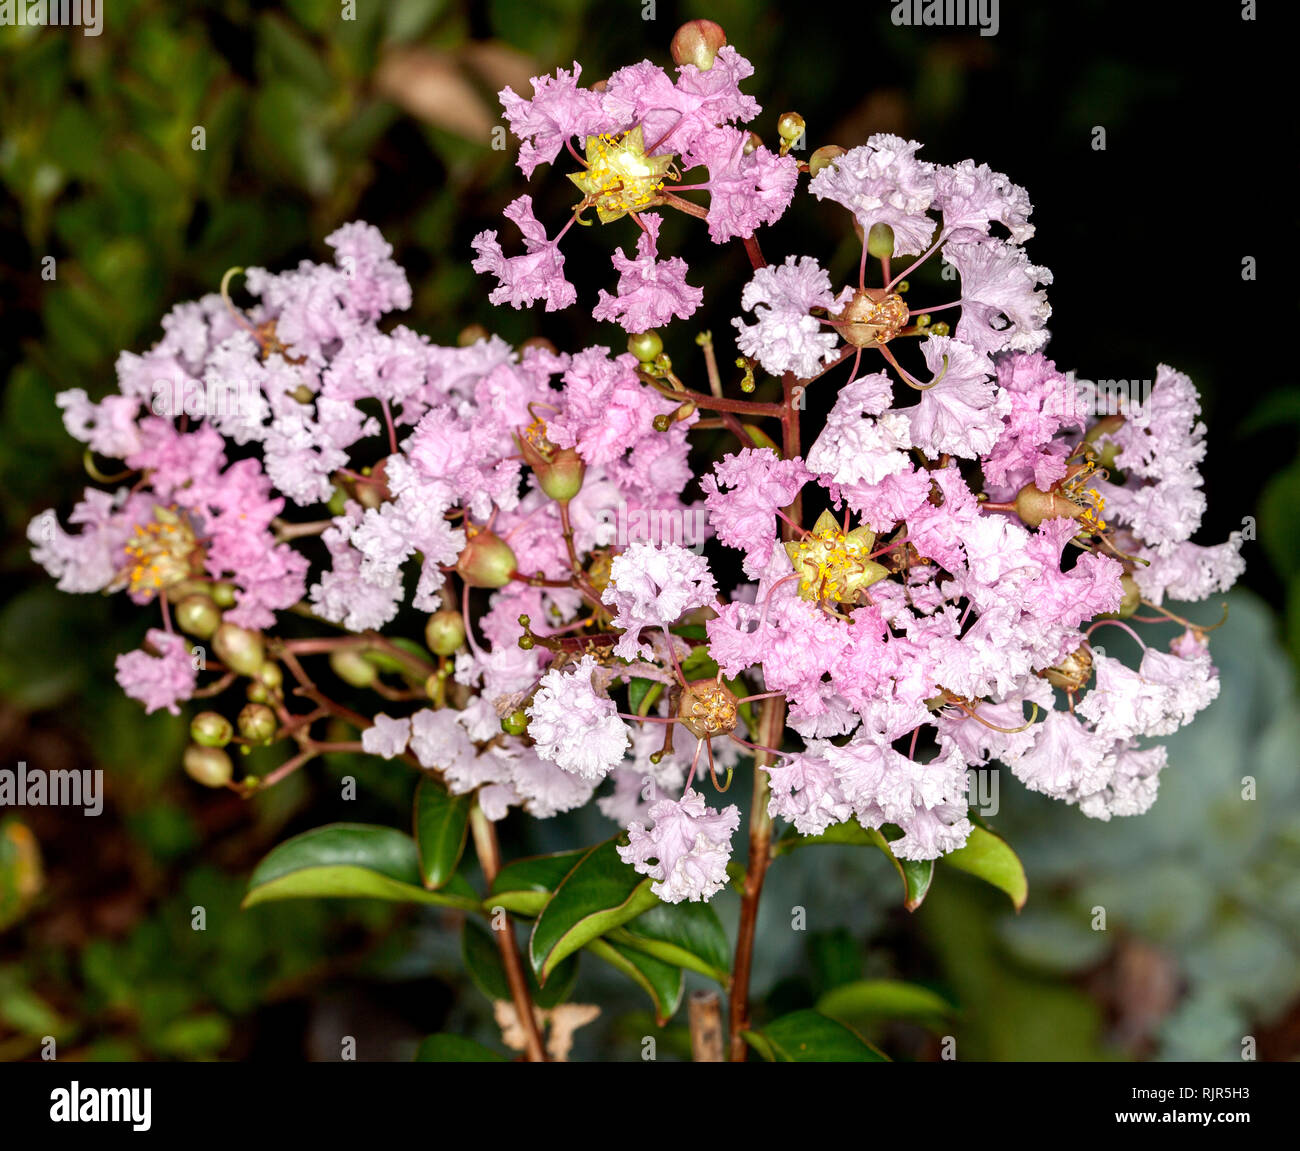 Cluster de délicates fleurs rose pâle de l'arbuste à feuilles caduques / arbre Myrtle Crepe, Lagerstroemia indica 'Sordette' contre le feuillage vert en arrière-plan Banque D'Images